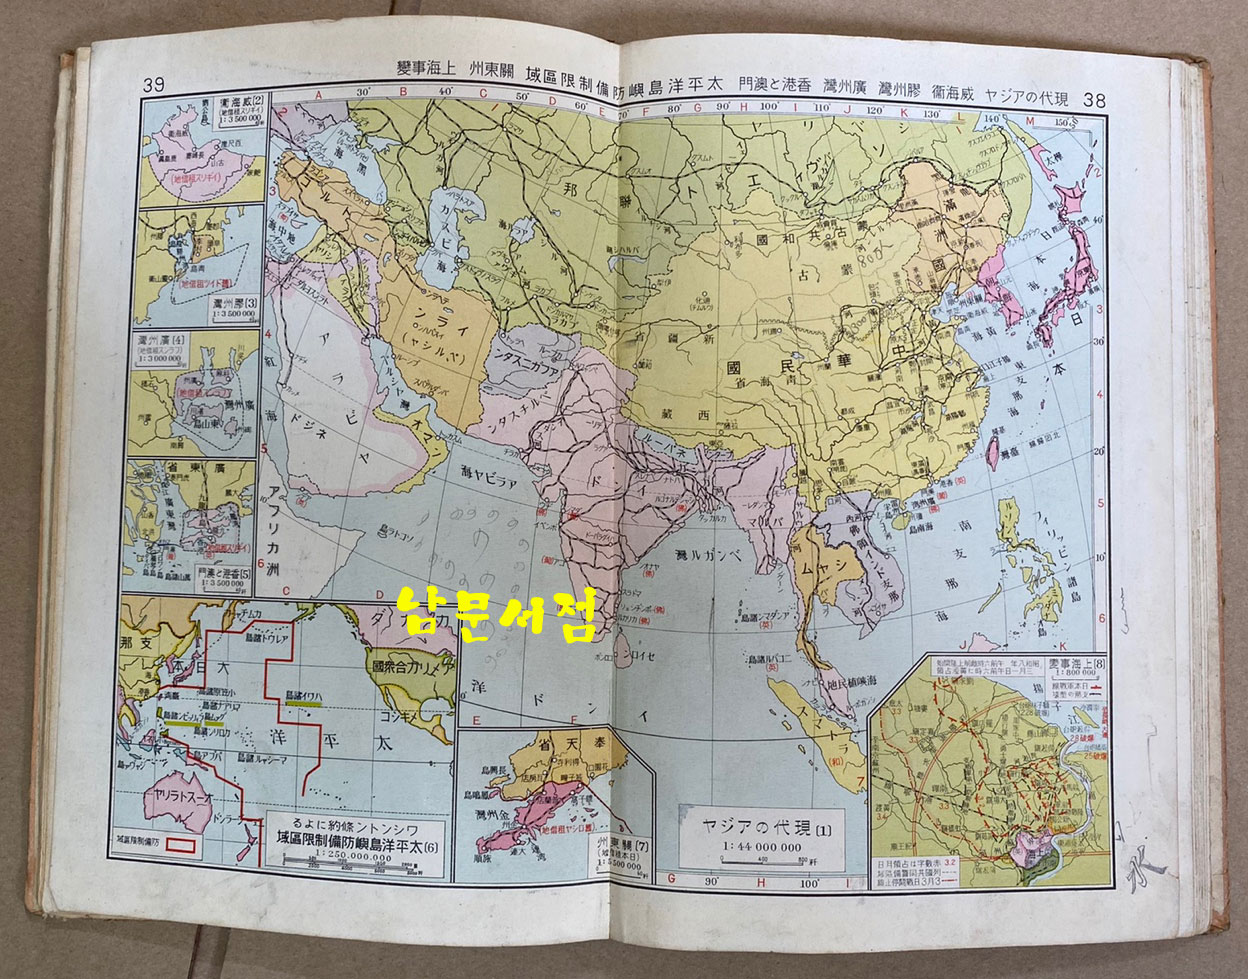 신선 역사정도 동양사지부 신제판 도판 35쪽 색인 32쪽 일본 제국서원발행 1938년 정정발행